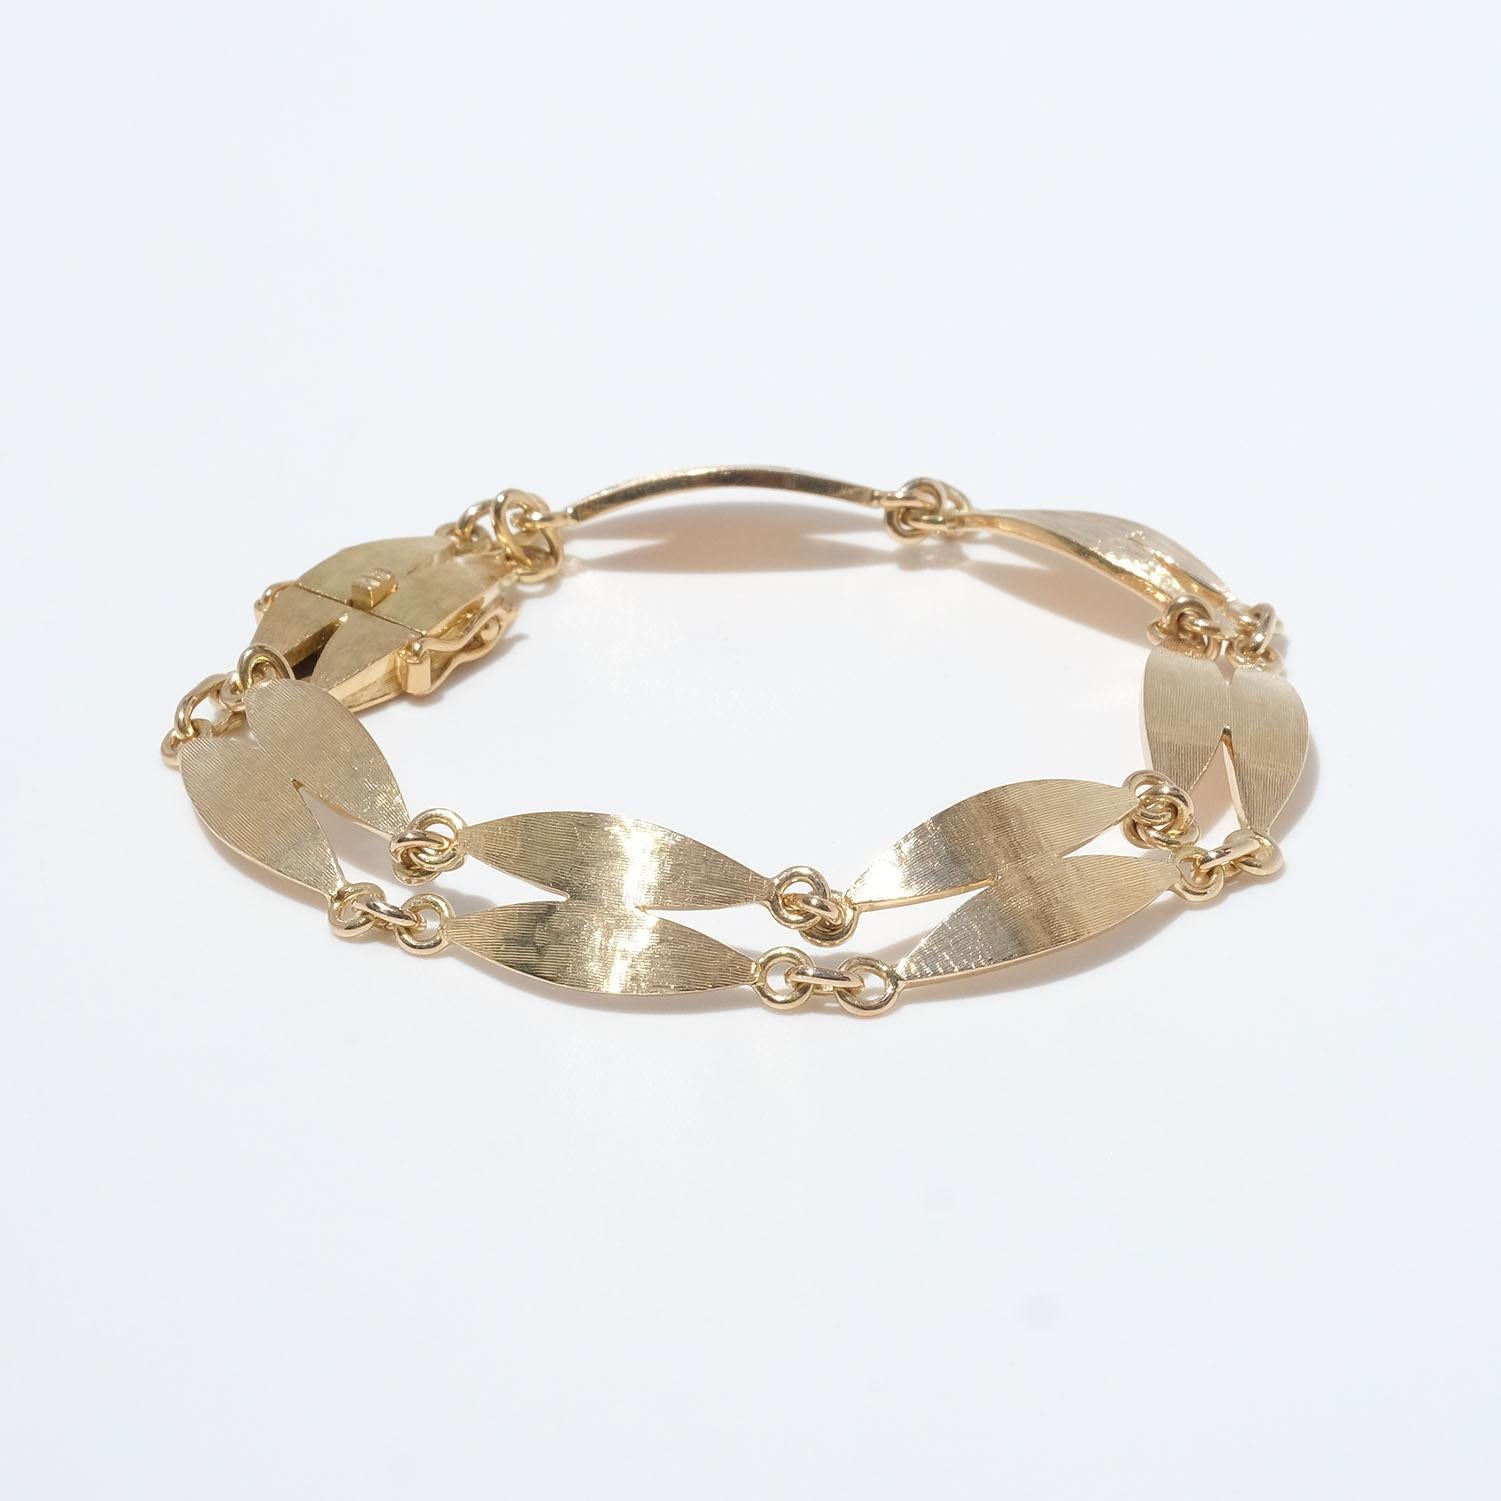 Dieses Armband aus 18 Karat Gold besteht aus ovalen Doppelgliedern, die mit kleinen Goldringen verbunden sind. Die Glieder haben eine matte und gebürstete Oberfläche. Das Armband lässt sich leicht mit einem Kastenverschluss schließen.

Das Armband